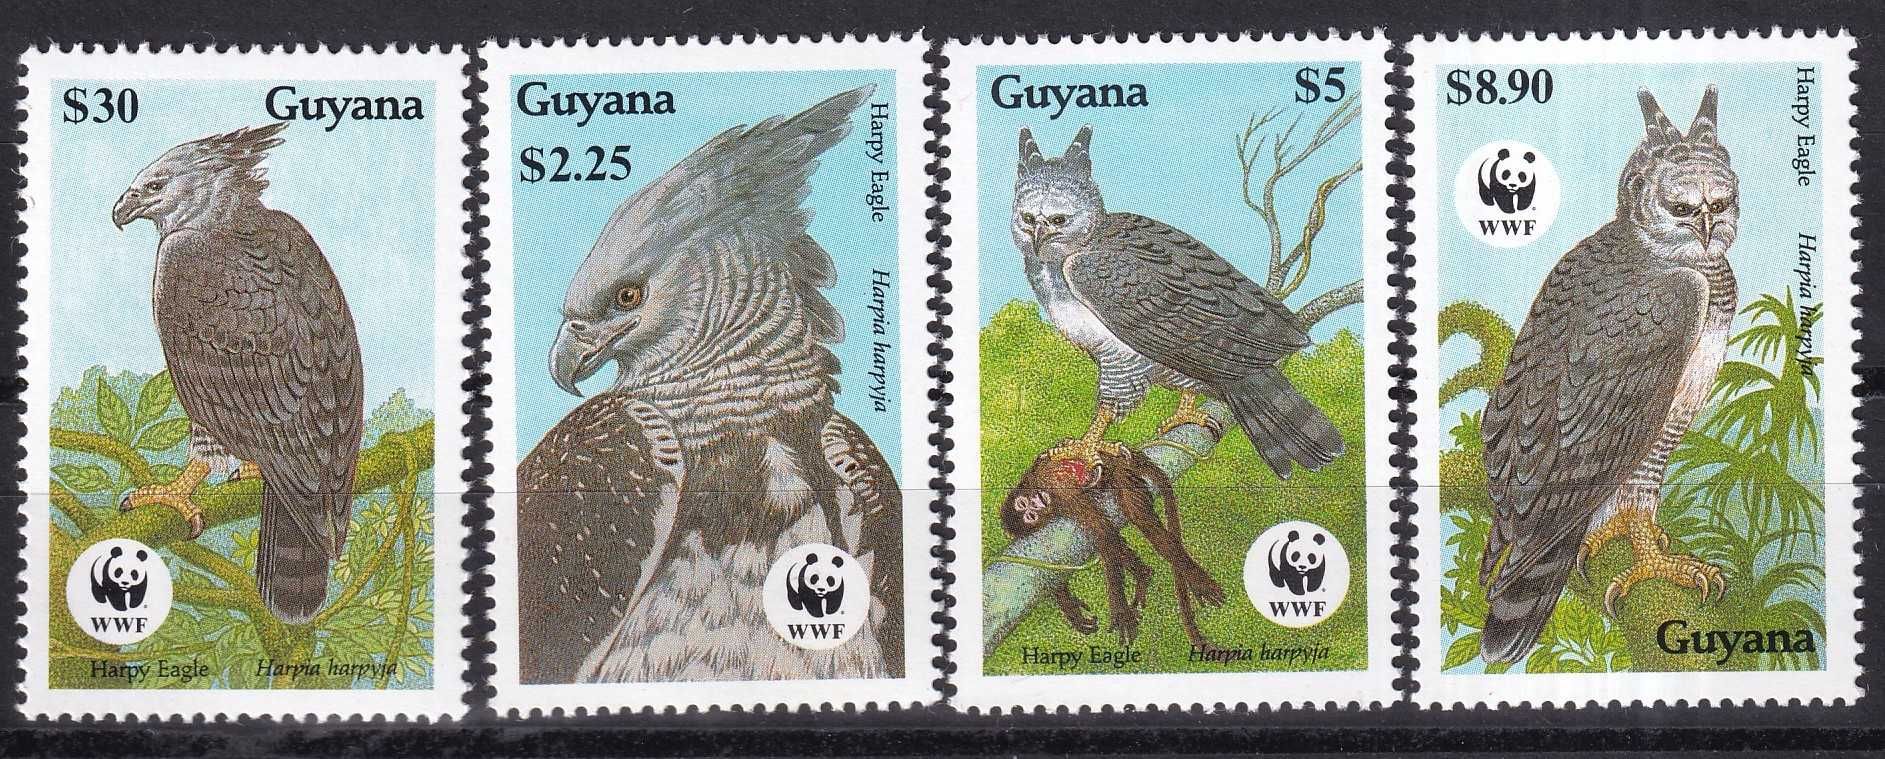 znaczki pocztowe - Gujana 1990 cena 7,20 zł kat.7,50€ - sowy